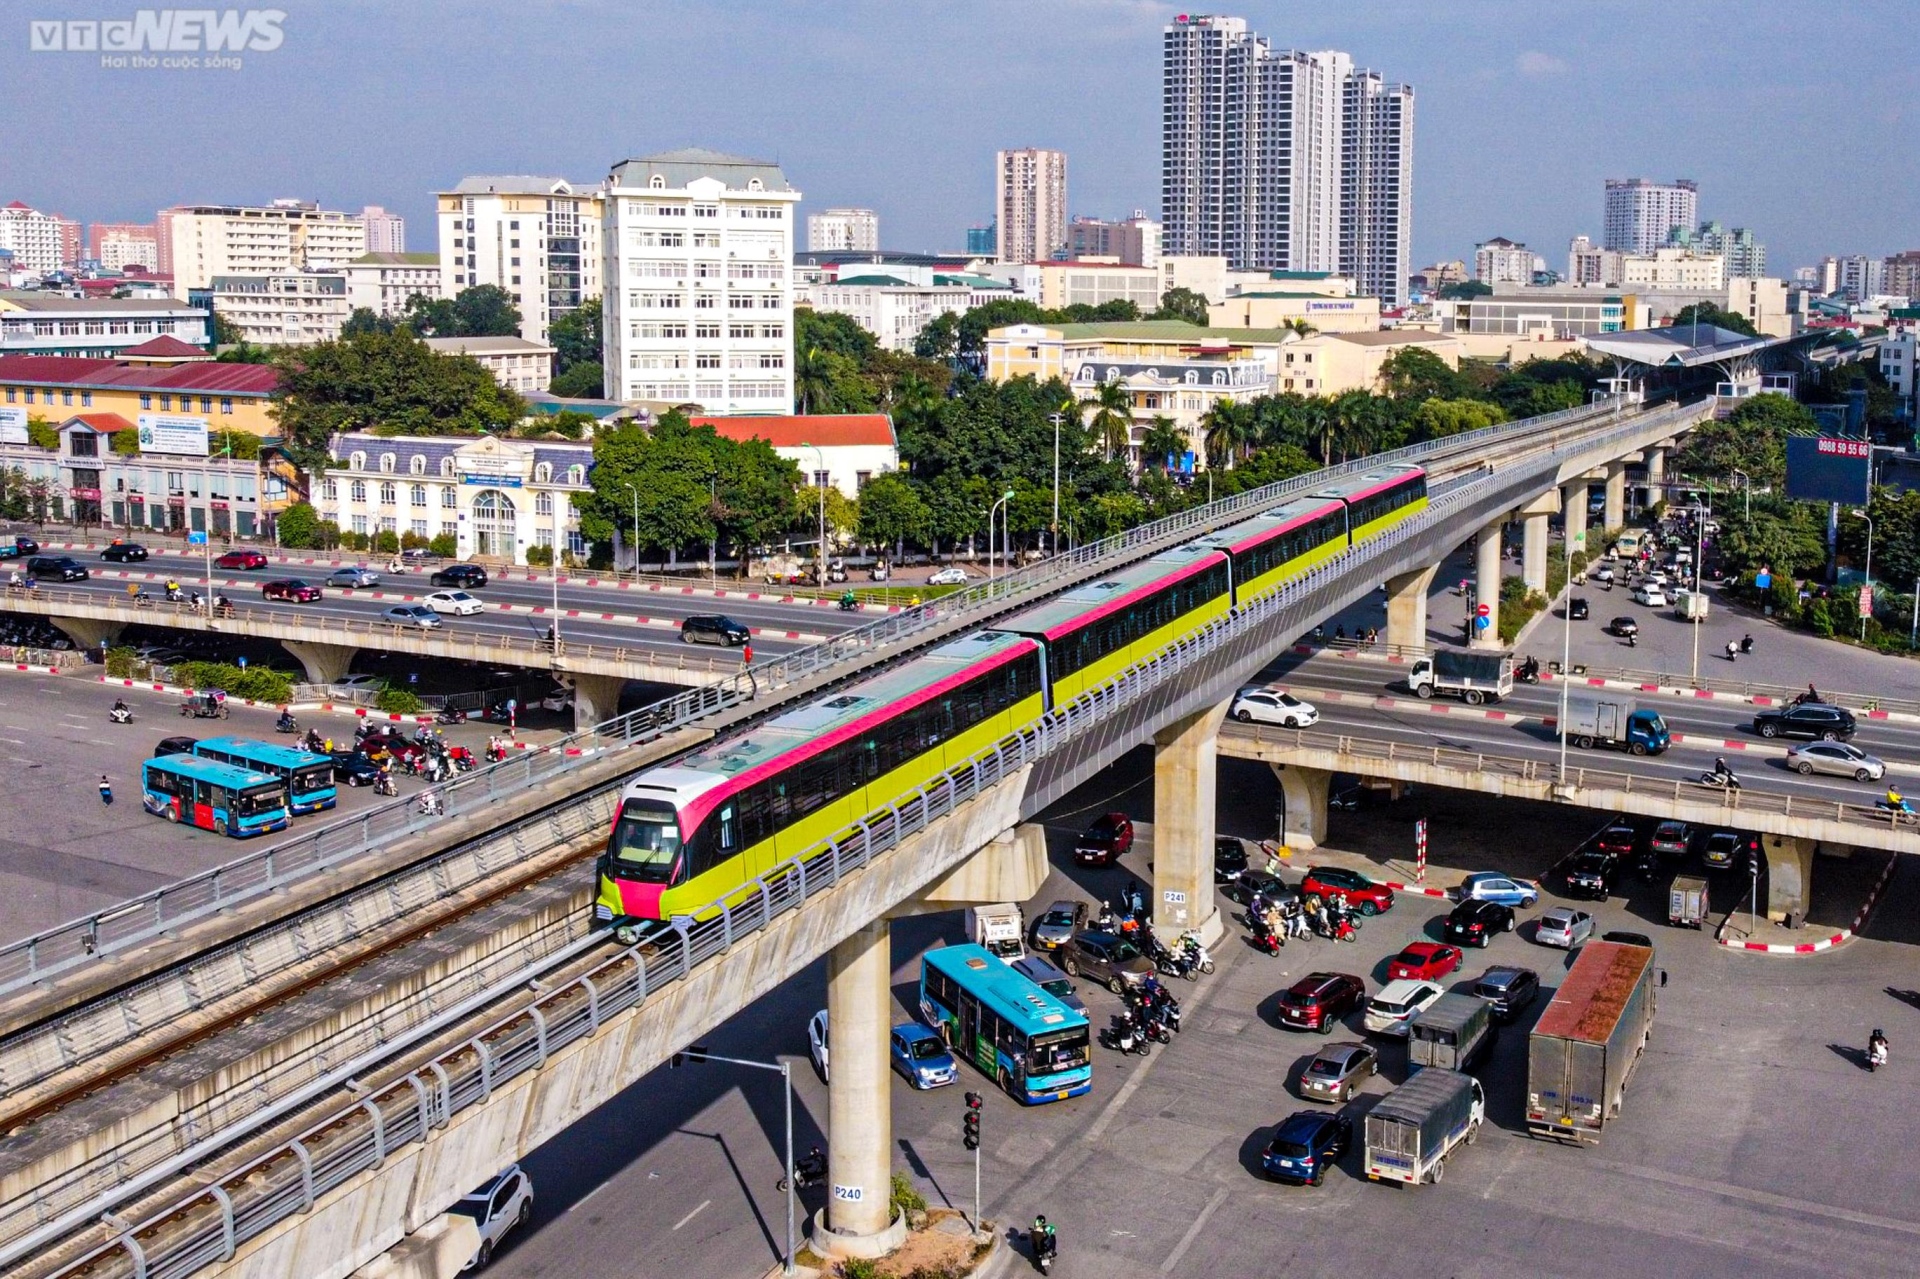 Metro Nhổn - Ga Hà Nội chạy thử nghiệm 8 đoàn tàu - Ảnh 6.